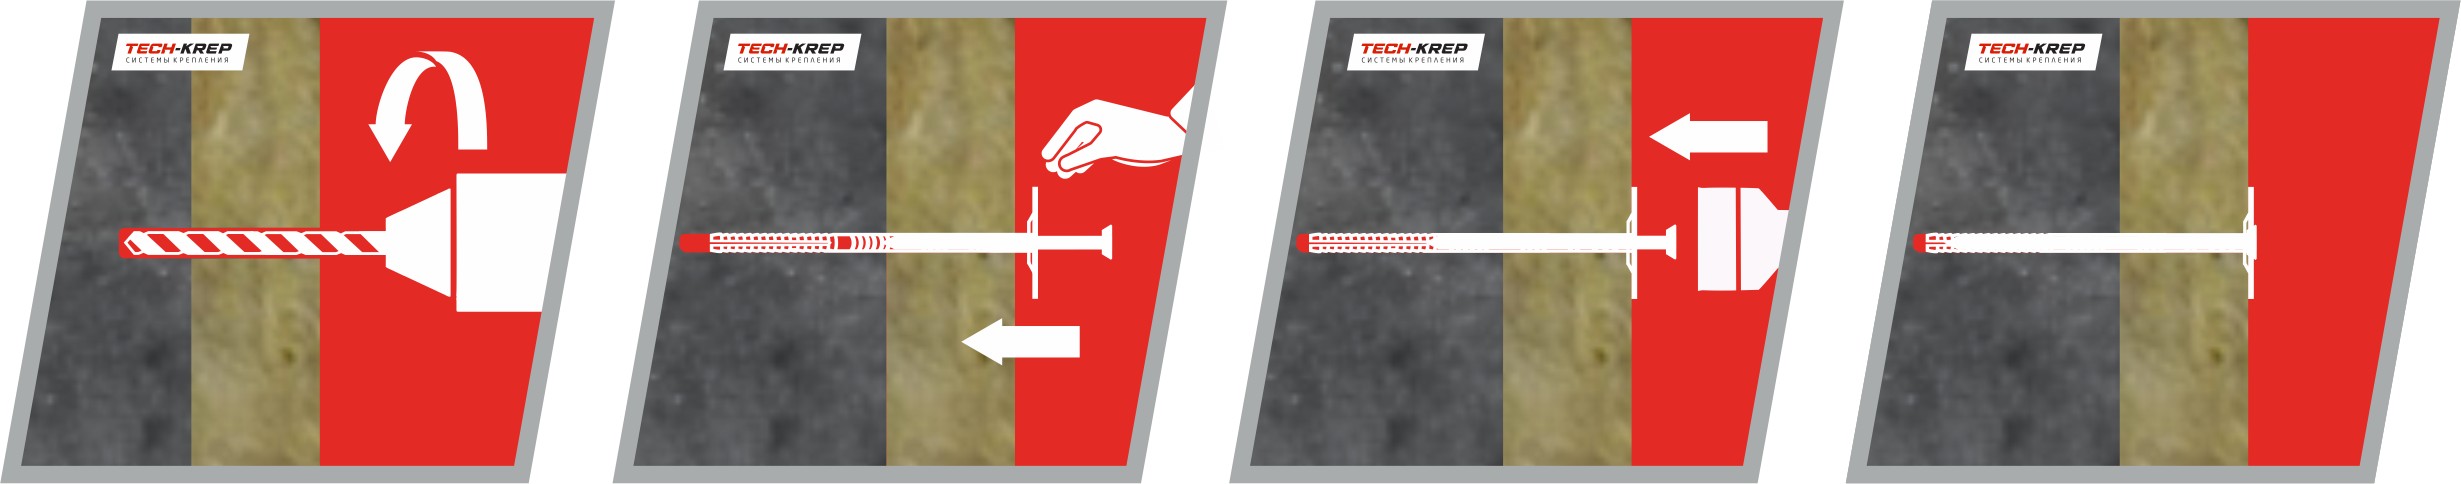 Схема крепления теплоизоляционного материала к бетонному основанию дюбелем IZO Tech-KREP